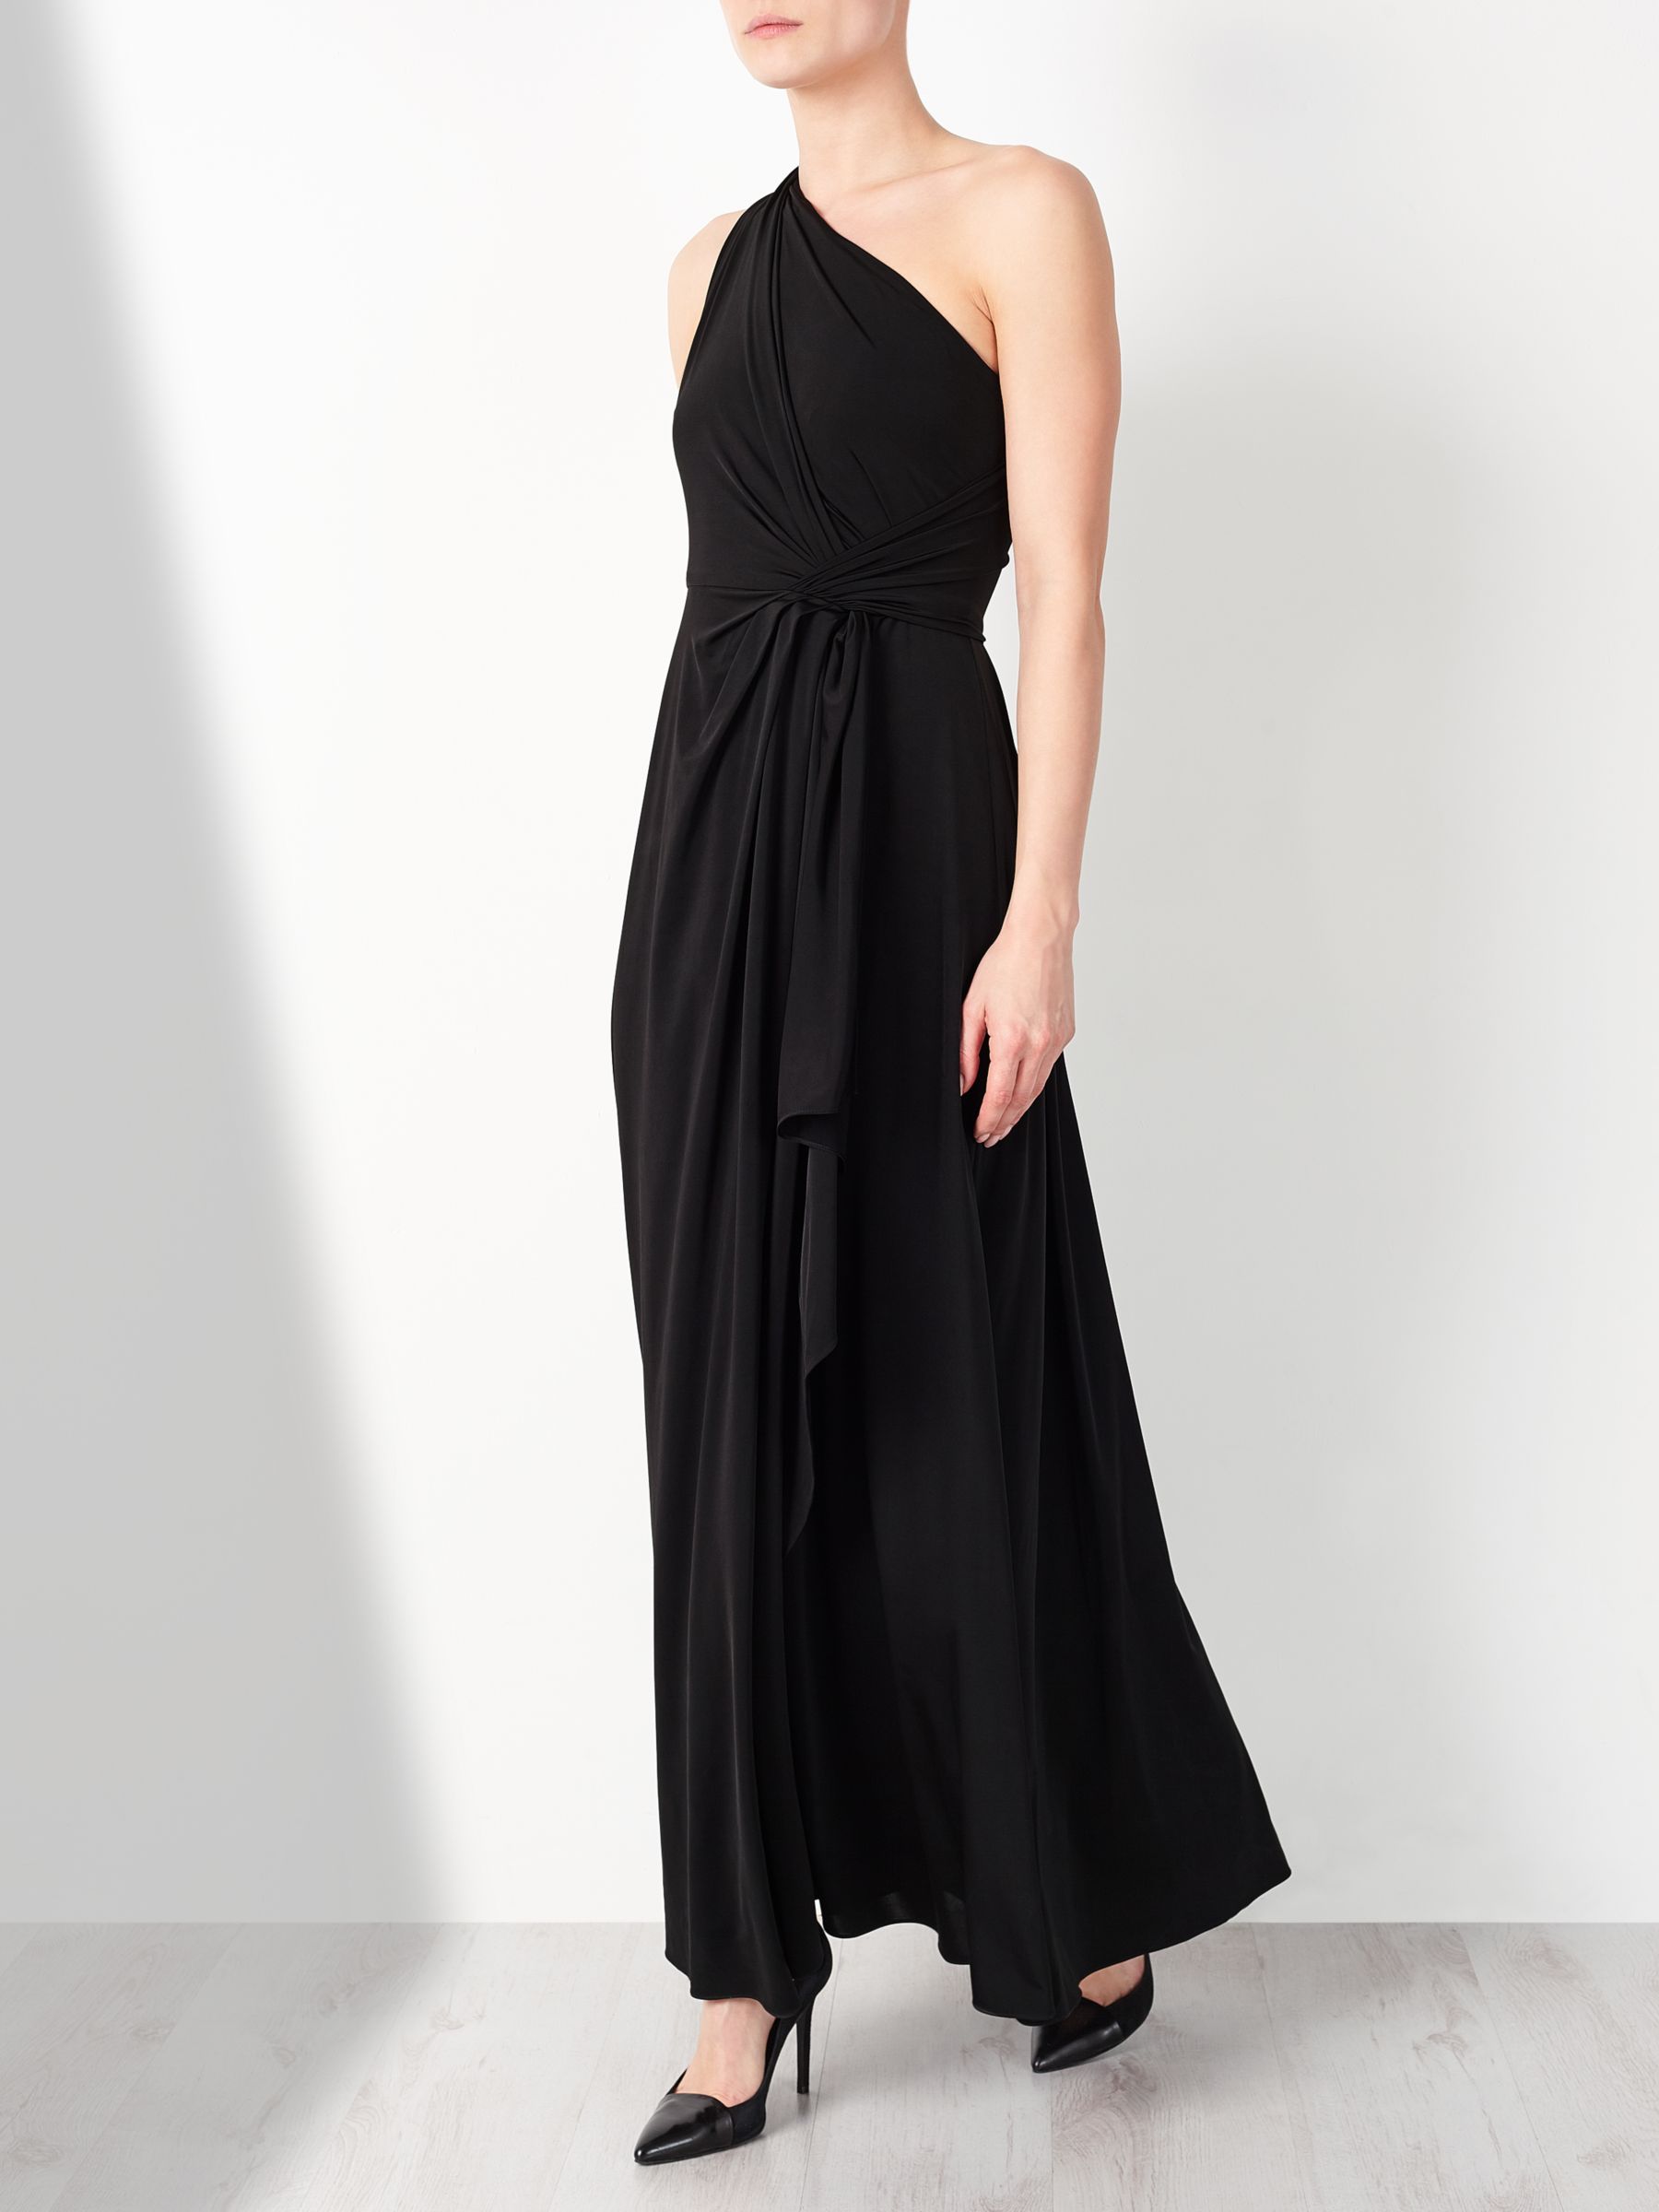 John Lewis & Partners One Shoulder Dress, Black, 8